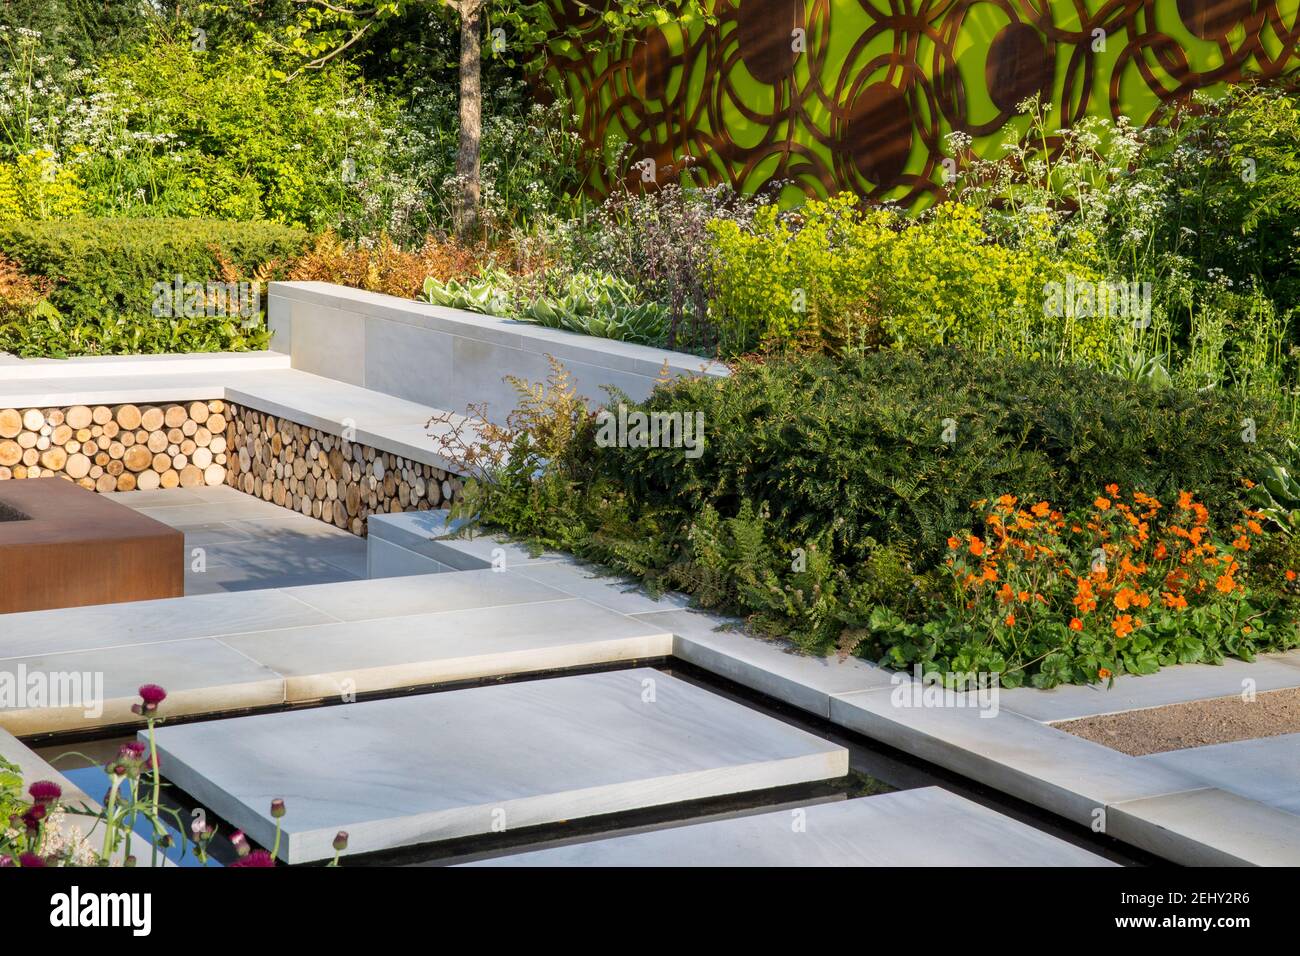 Vista moderna del jardín inglés Yorkstone escalonamiento de losas sobre una fuente de agua que conduce a un jardín hundido con bordes de flores de banco de piedra Primavera Reino Unido Foto de stock